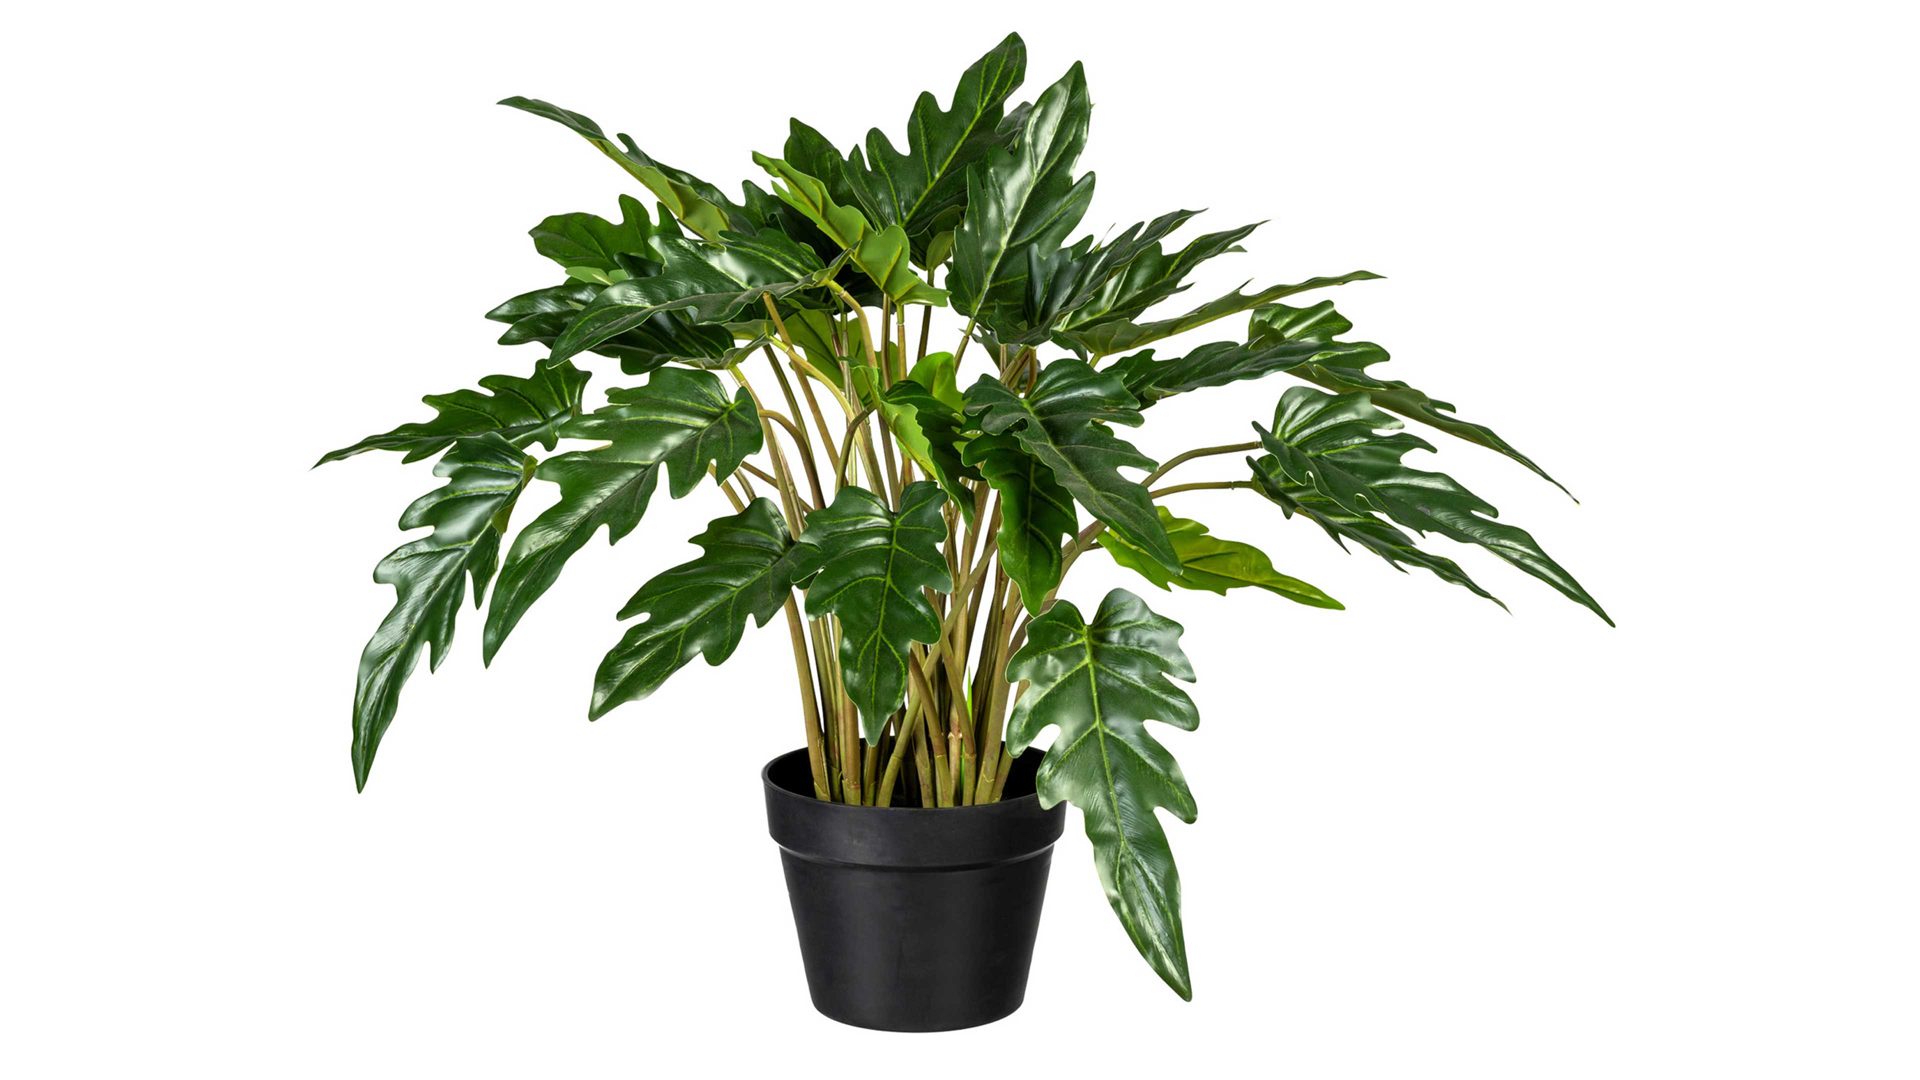 Pflanze Gasper aus Kunststoff in Grün Baumfreund Philodendron xanadu grüner Kunststoff & schwarzer Topf – Höhe ca. 60 cm